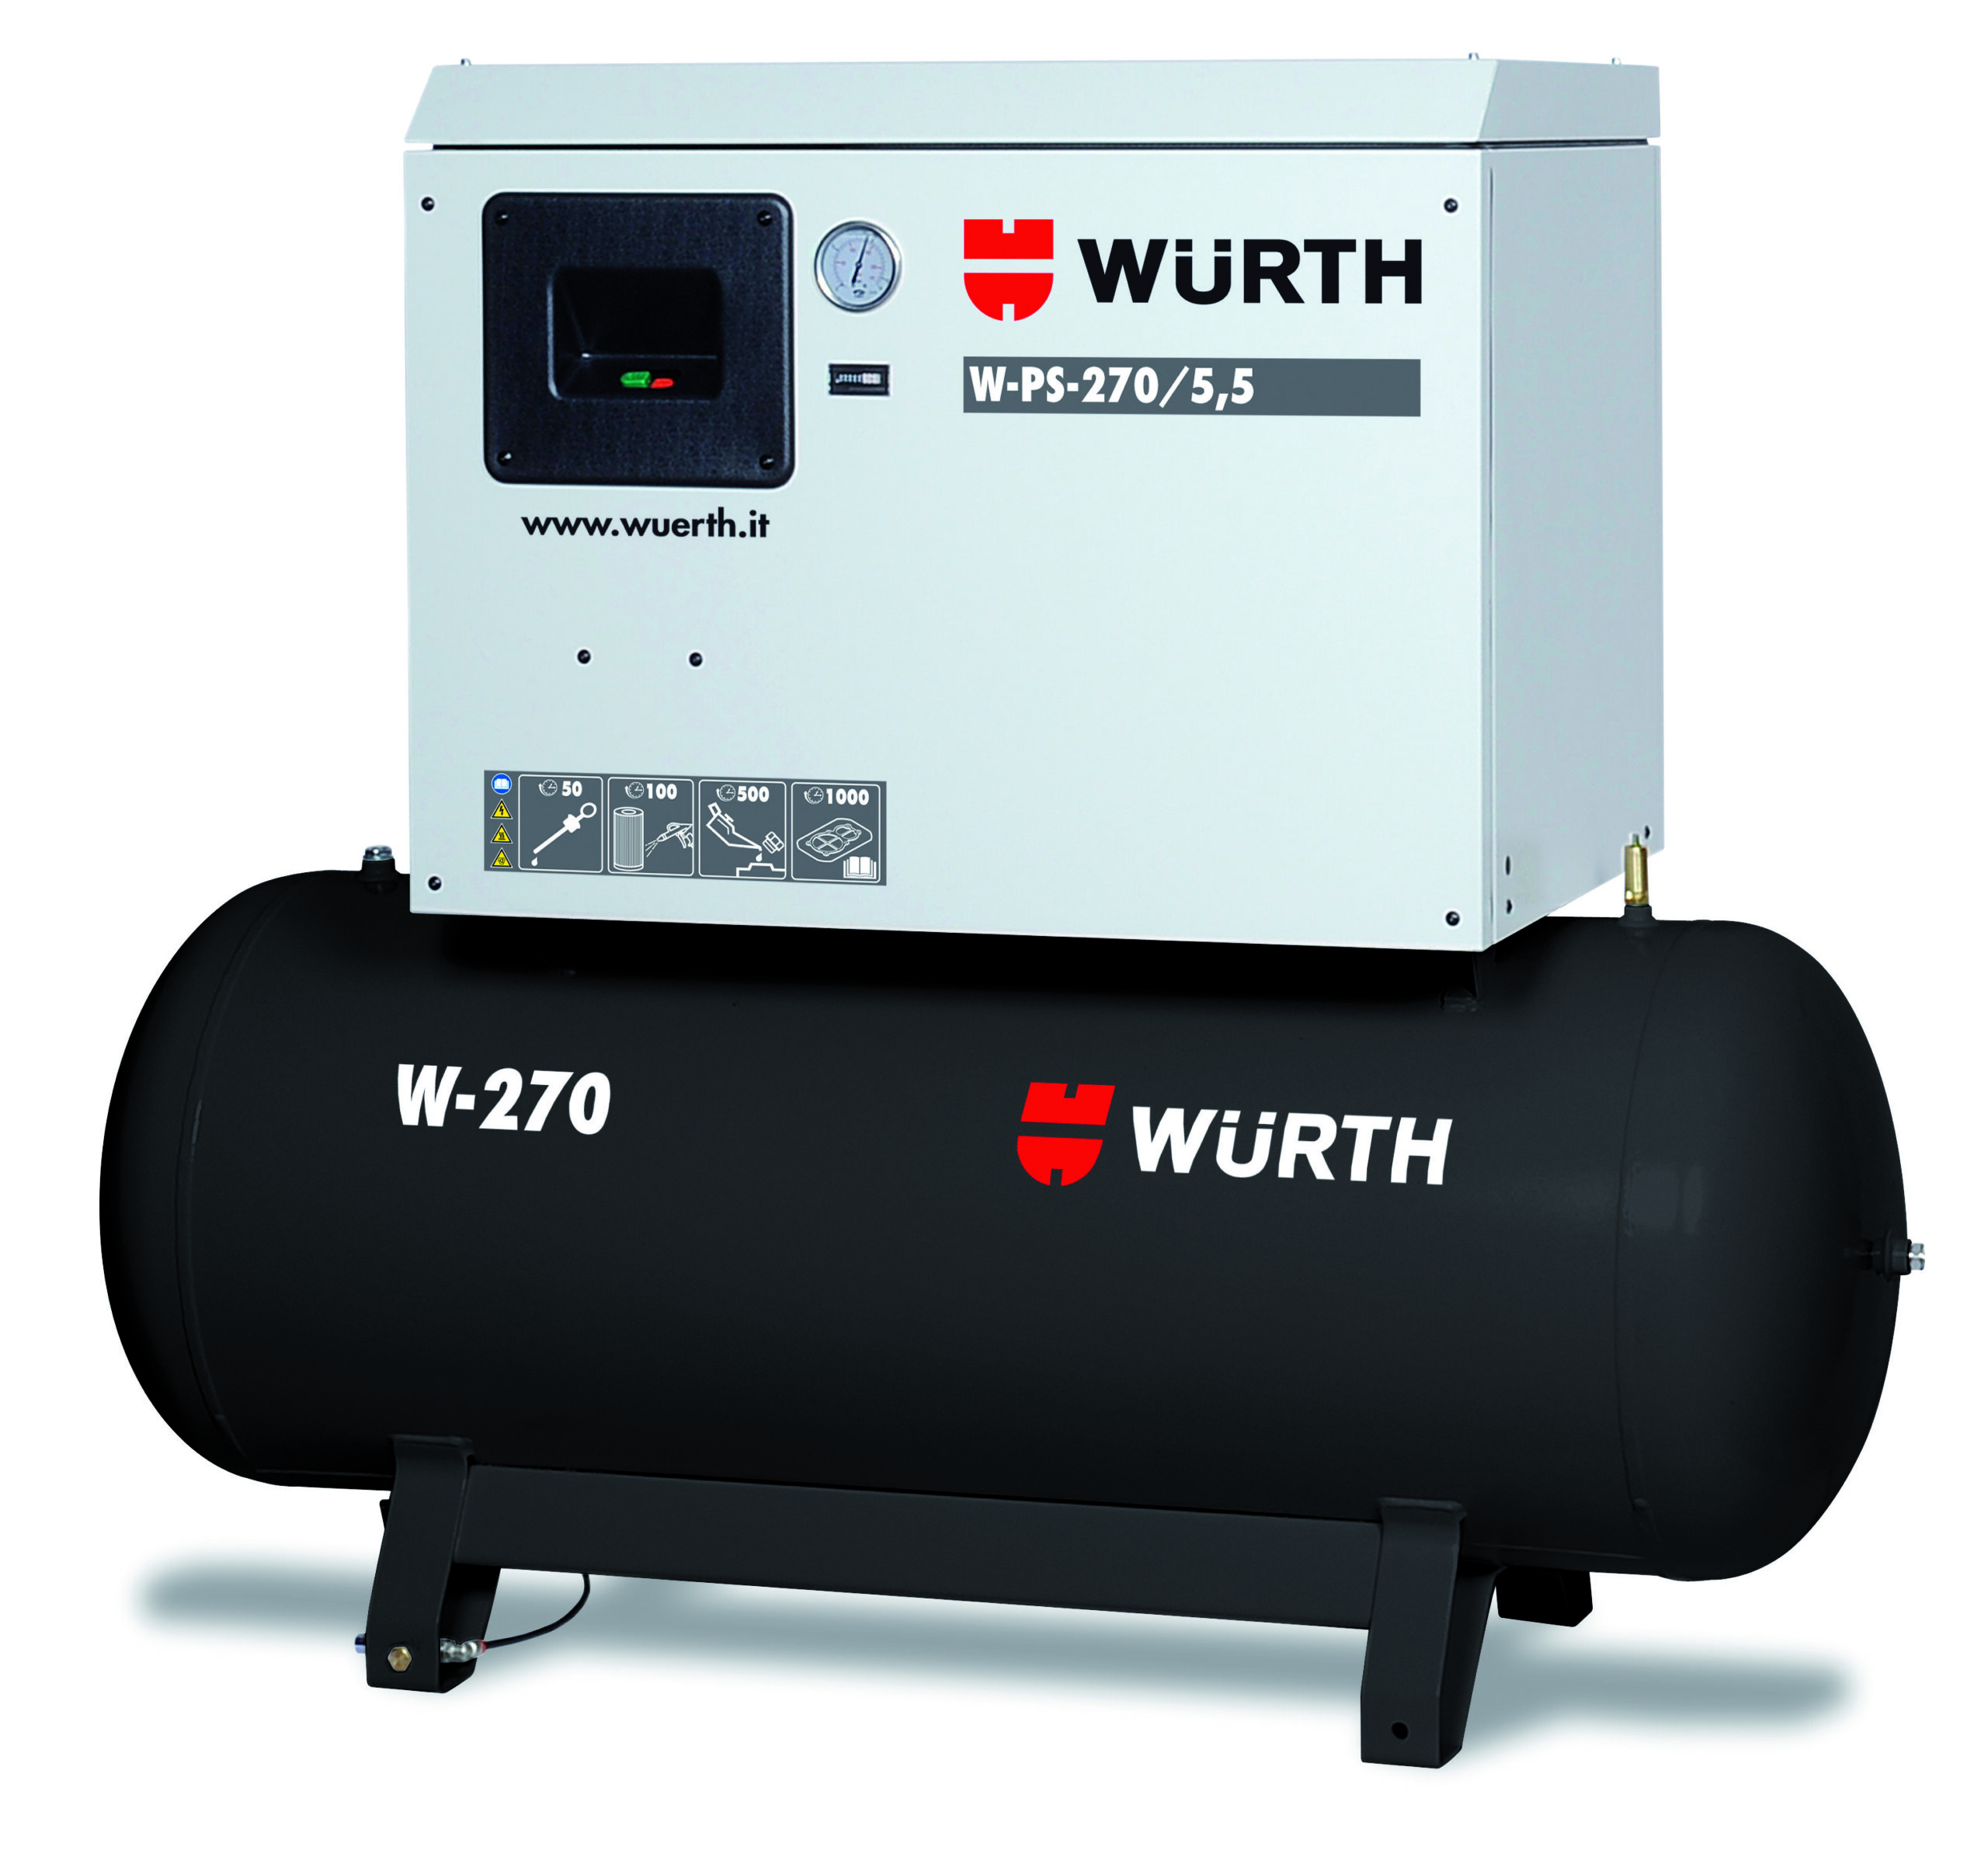 COMPRESSORE SILENZIATO W-PS 270/7.5 - Equipment by Würth